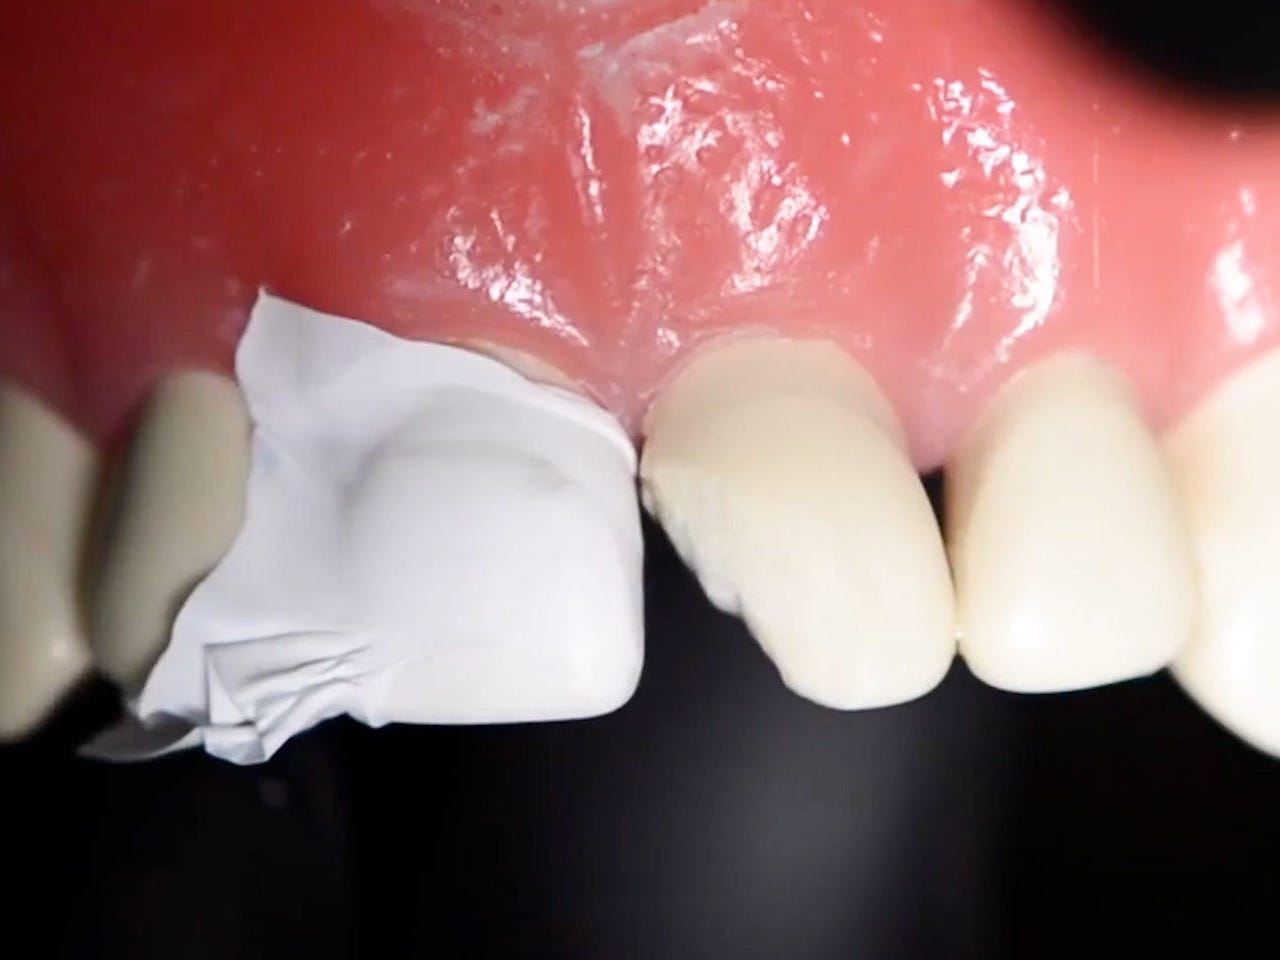 Weißes Klebeband wird auf den Zahn neben dem abgebrochenen Zahn aufgebracht